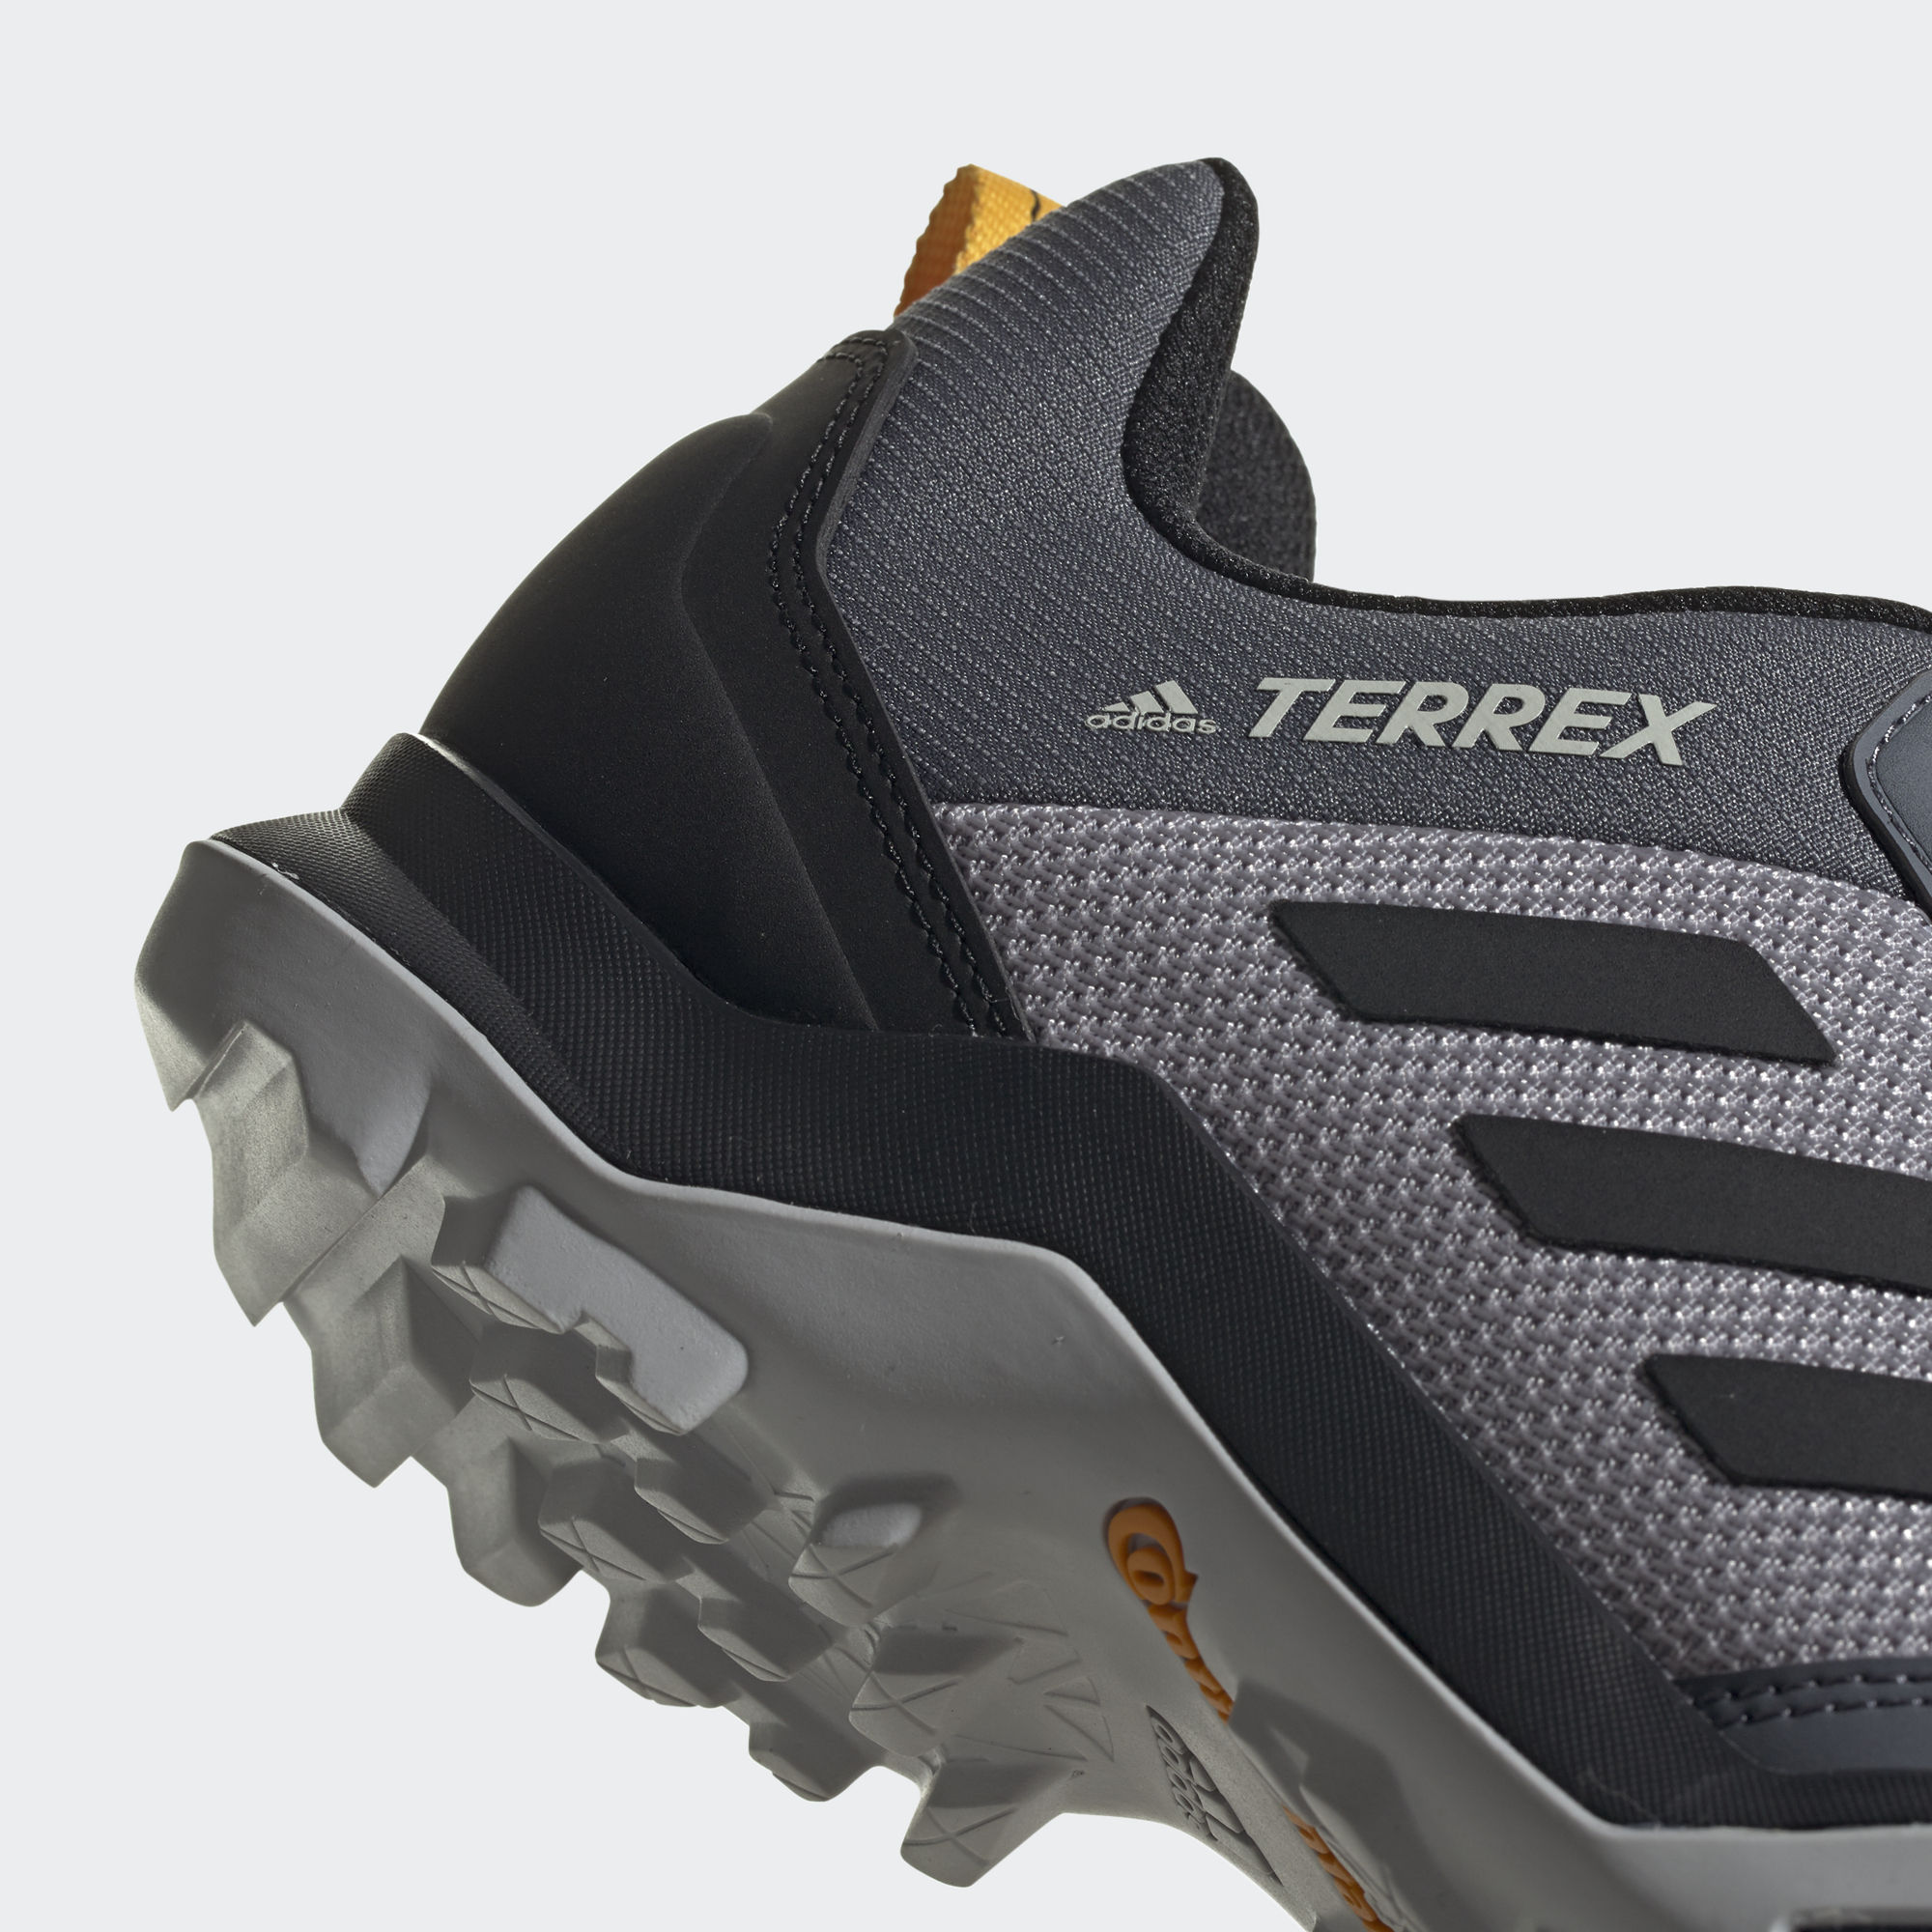 Adidas Terrex ax3 Hiking. Adidas Terrex ax3 черный. Terrex ax3 Hiking Shoes. Adidas terrex ax3